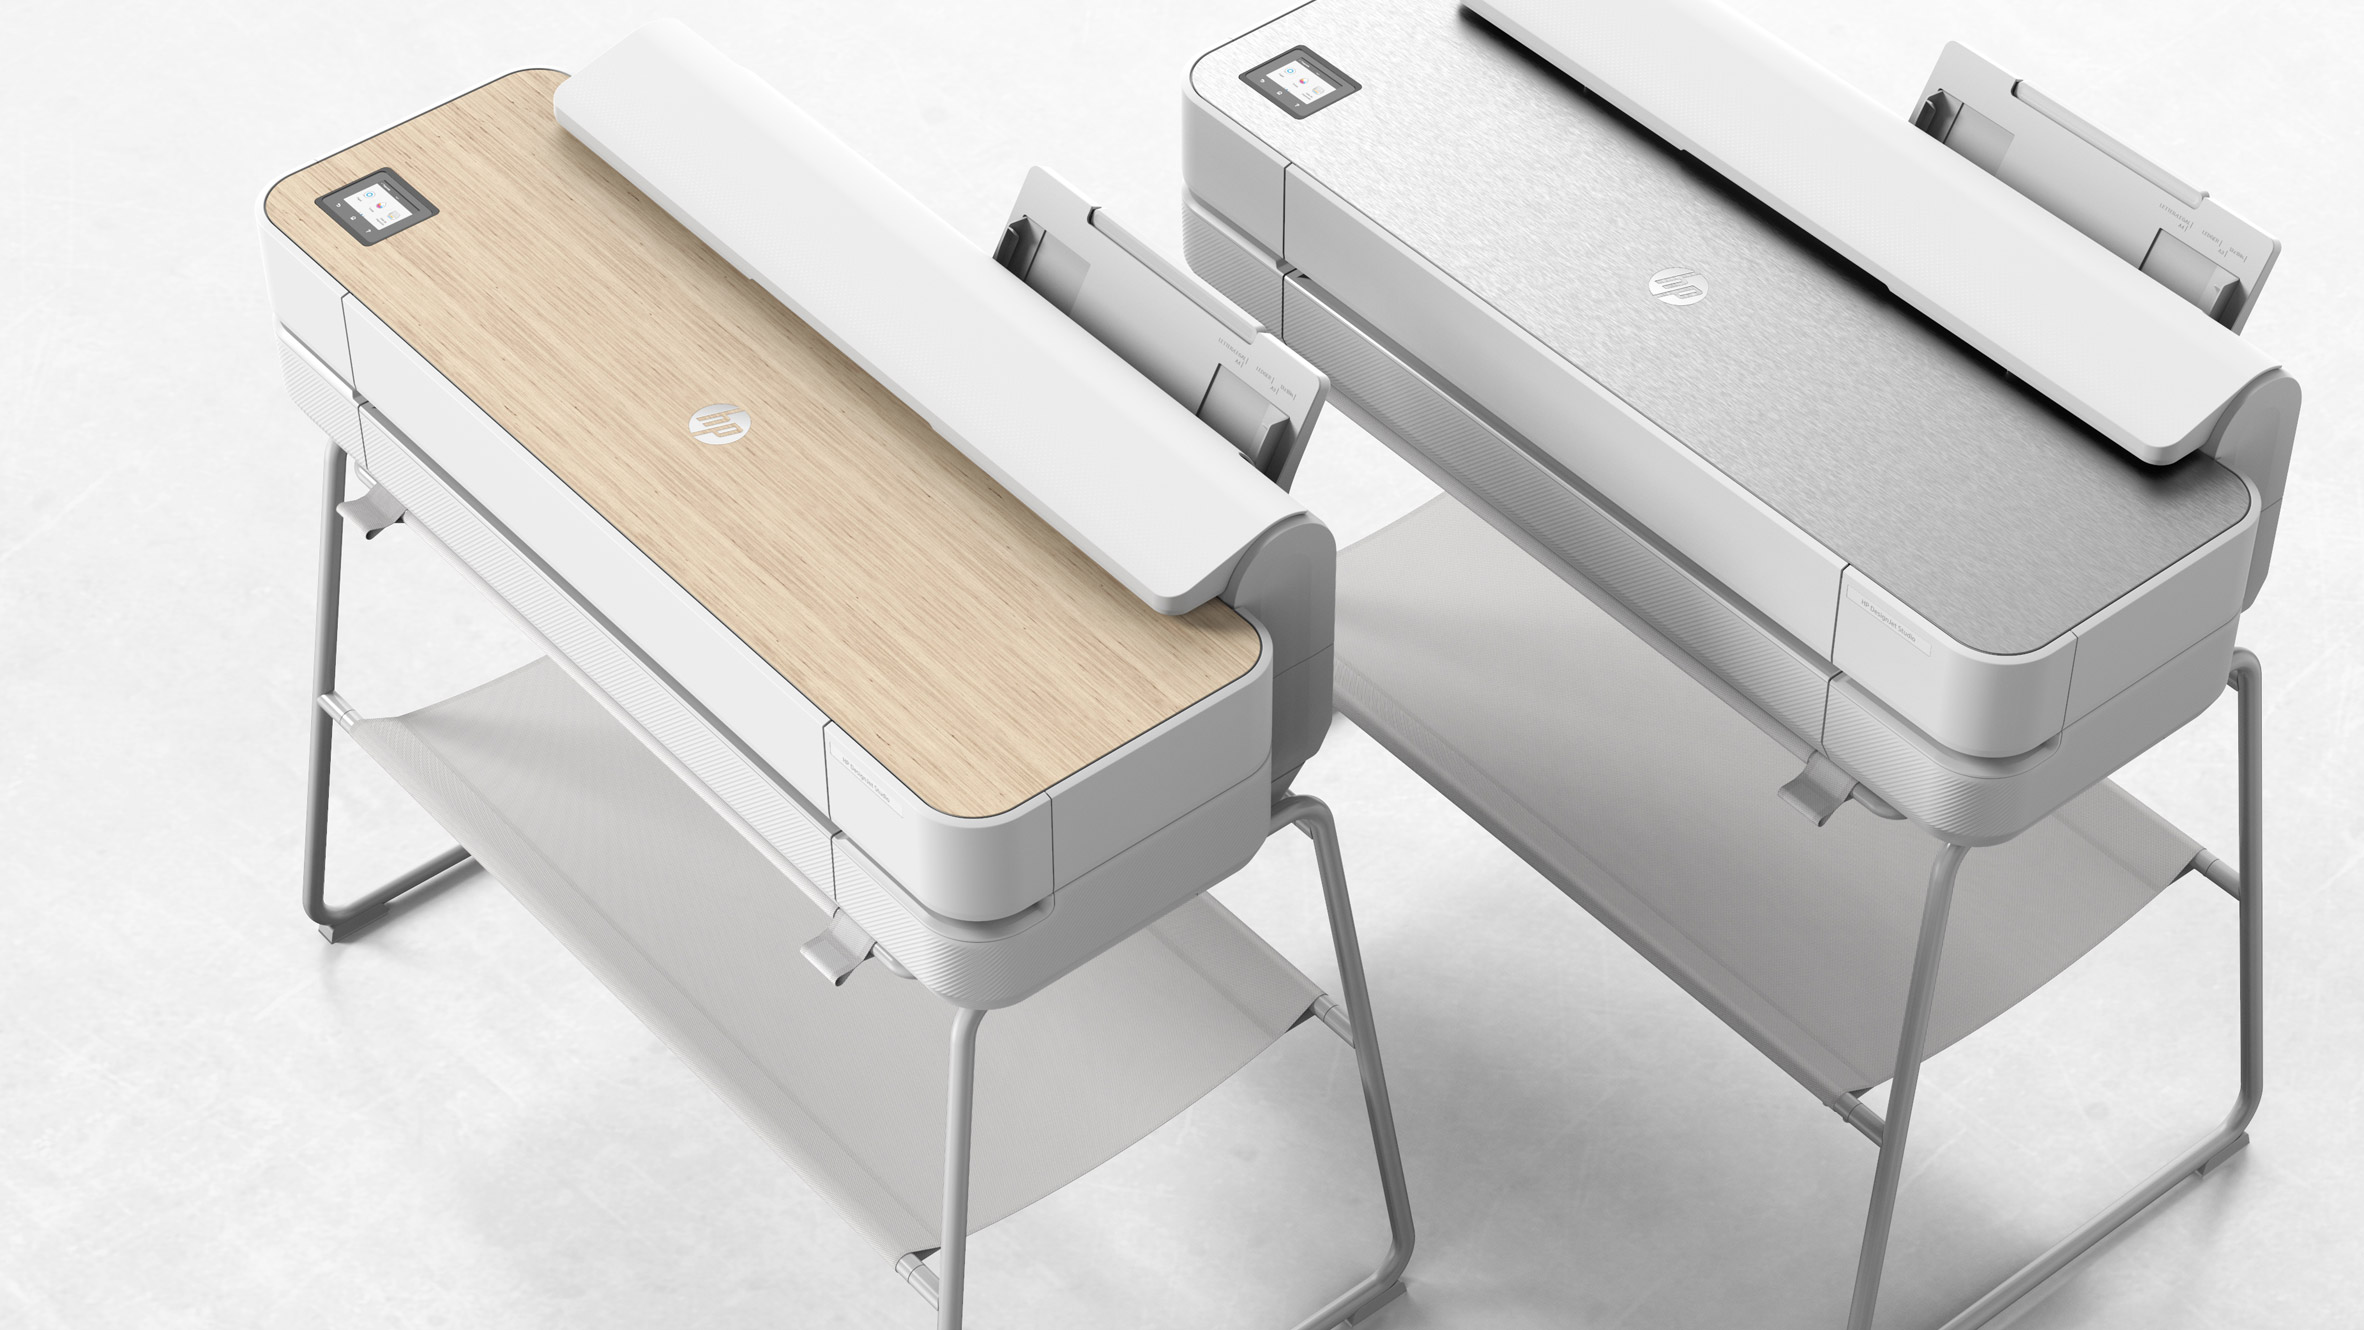 Render of HP Designjet Studio Printer with wooden or steel top